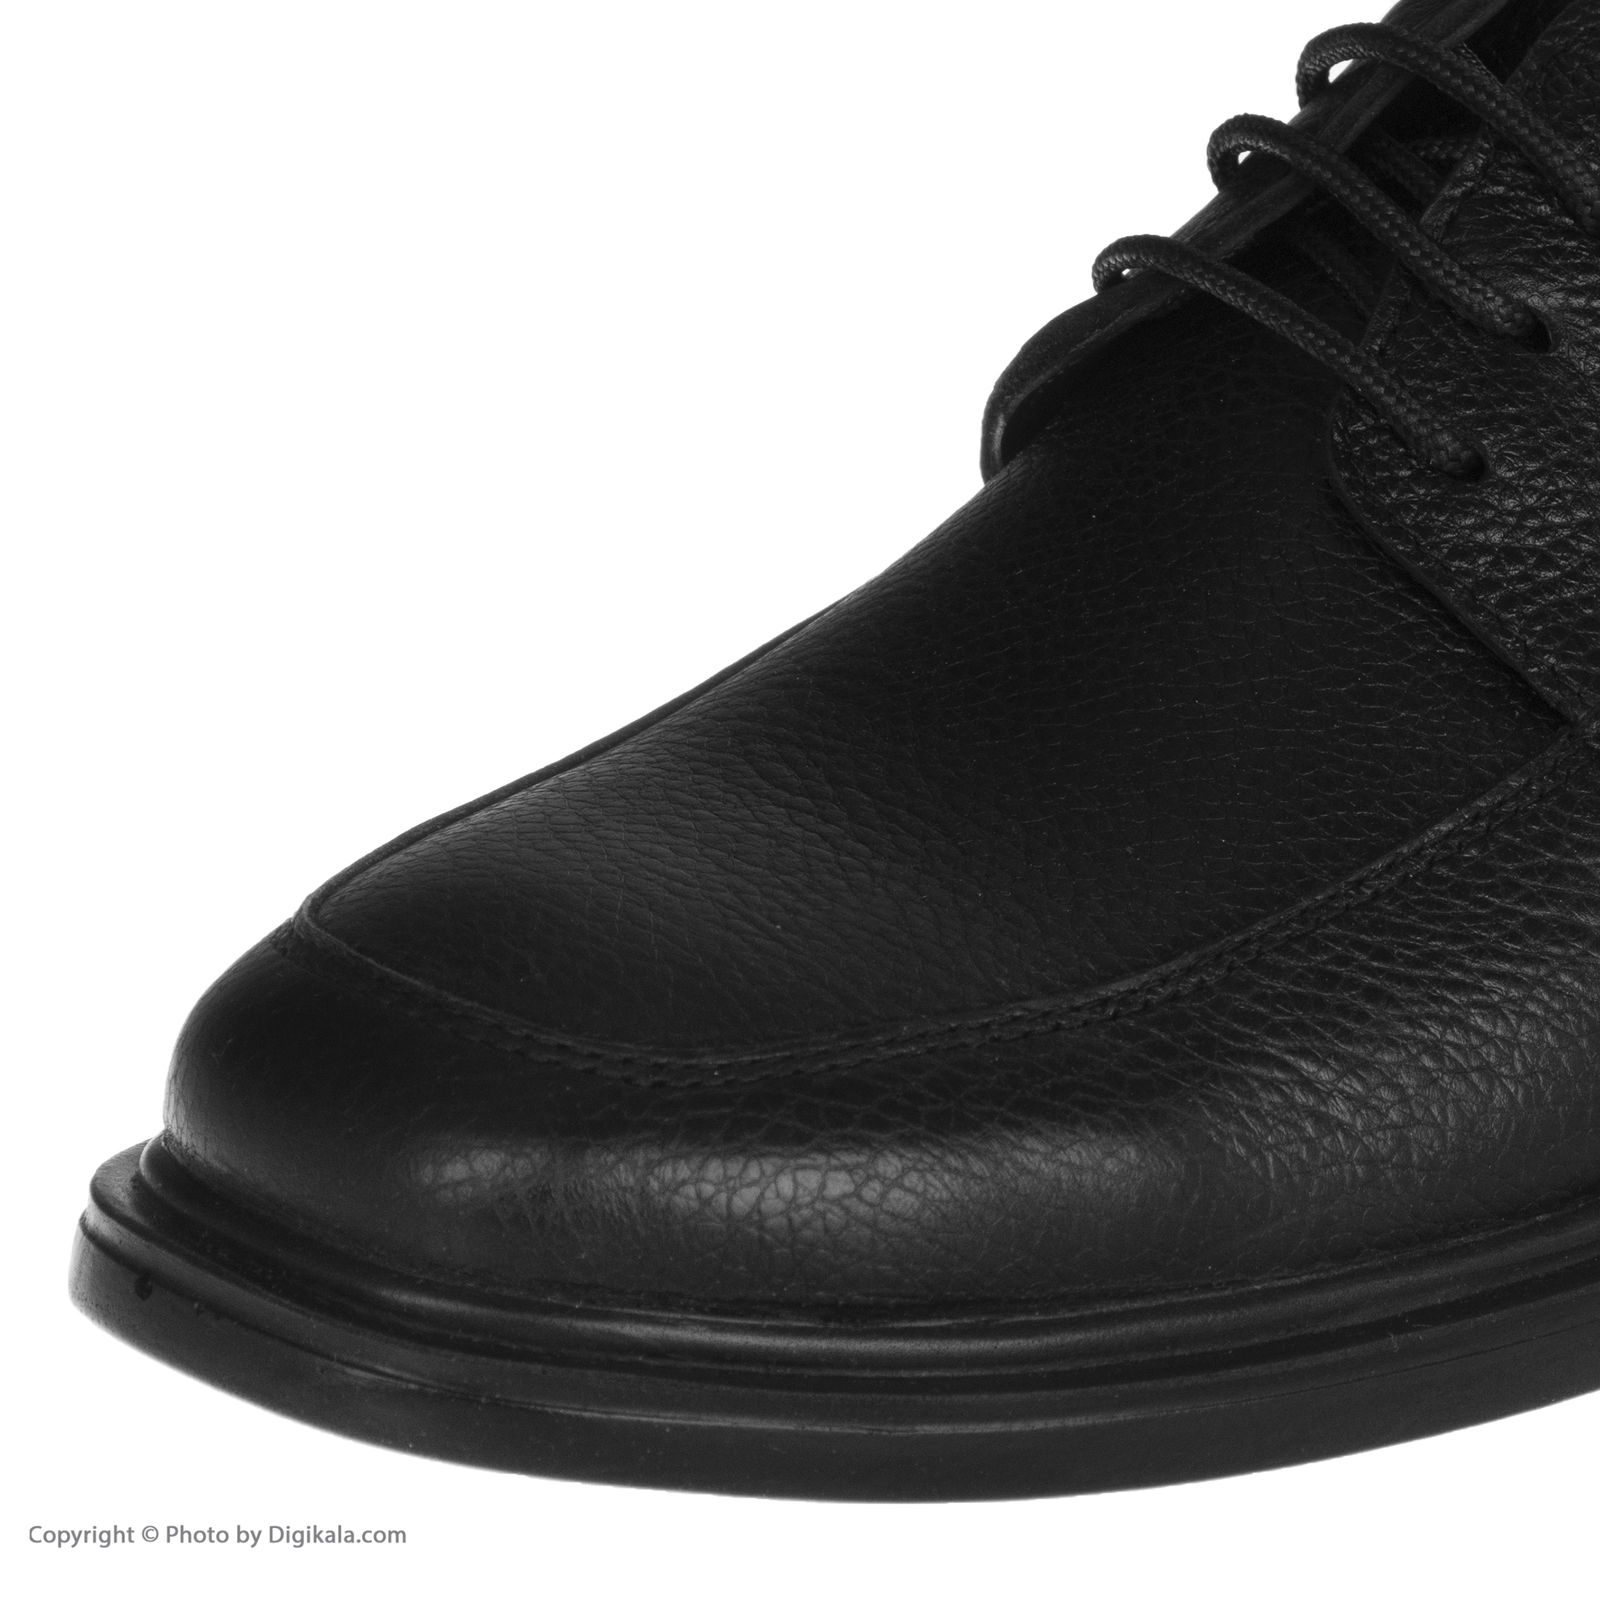  کفش مردانه شیفر مدل 7258B503101 -  - 7